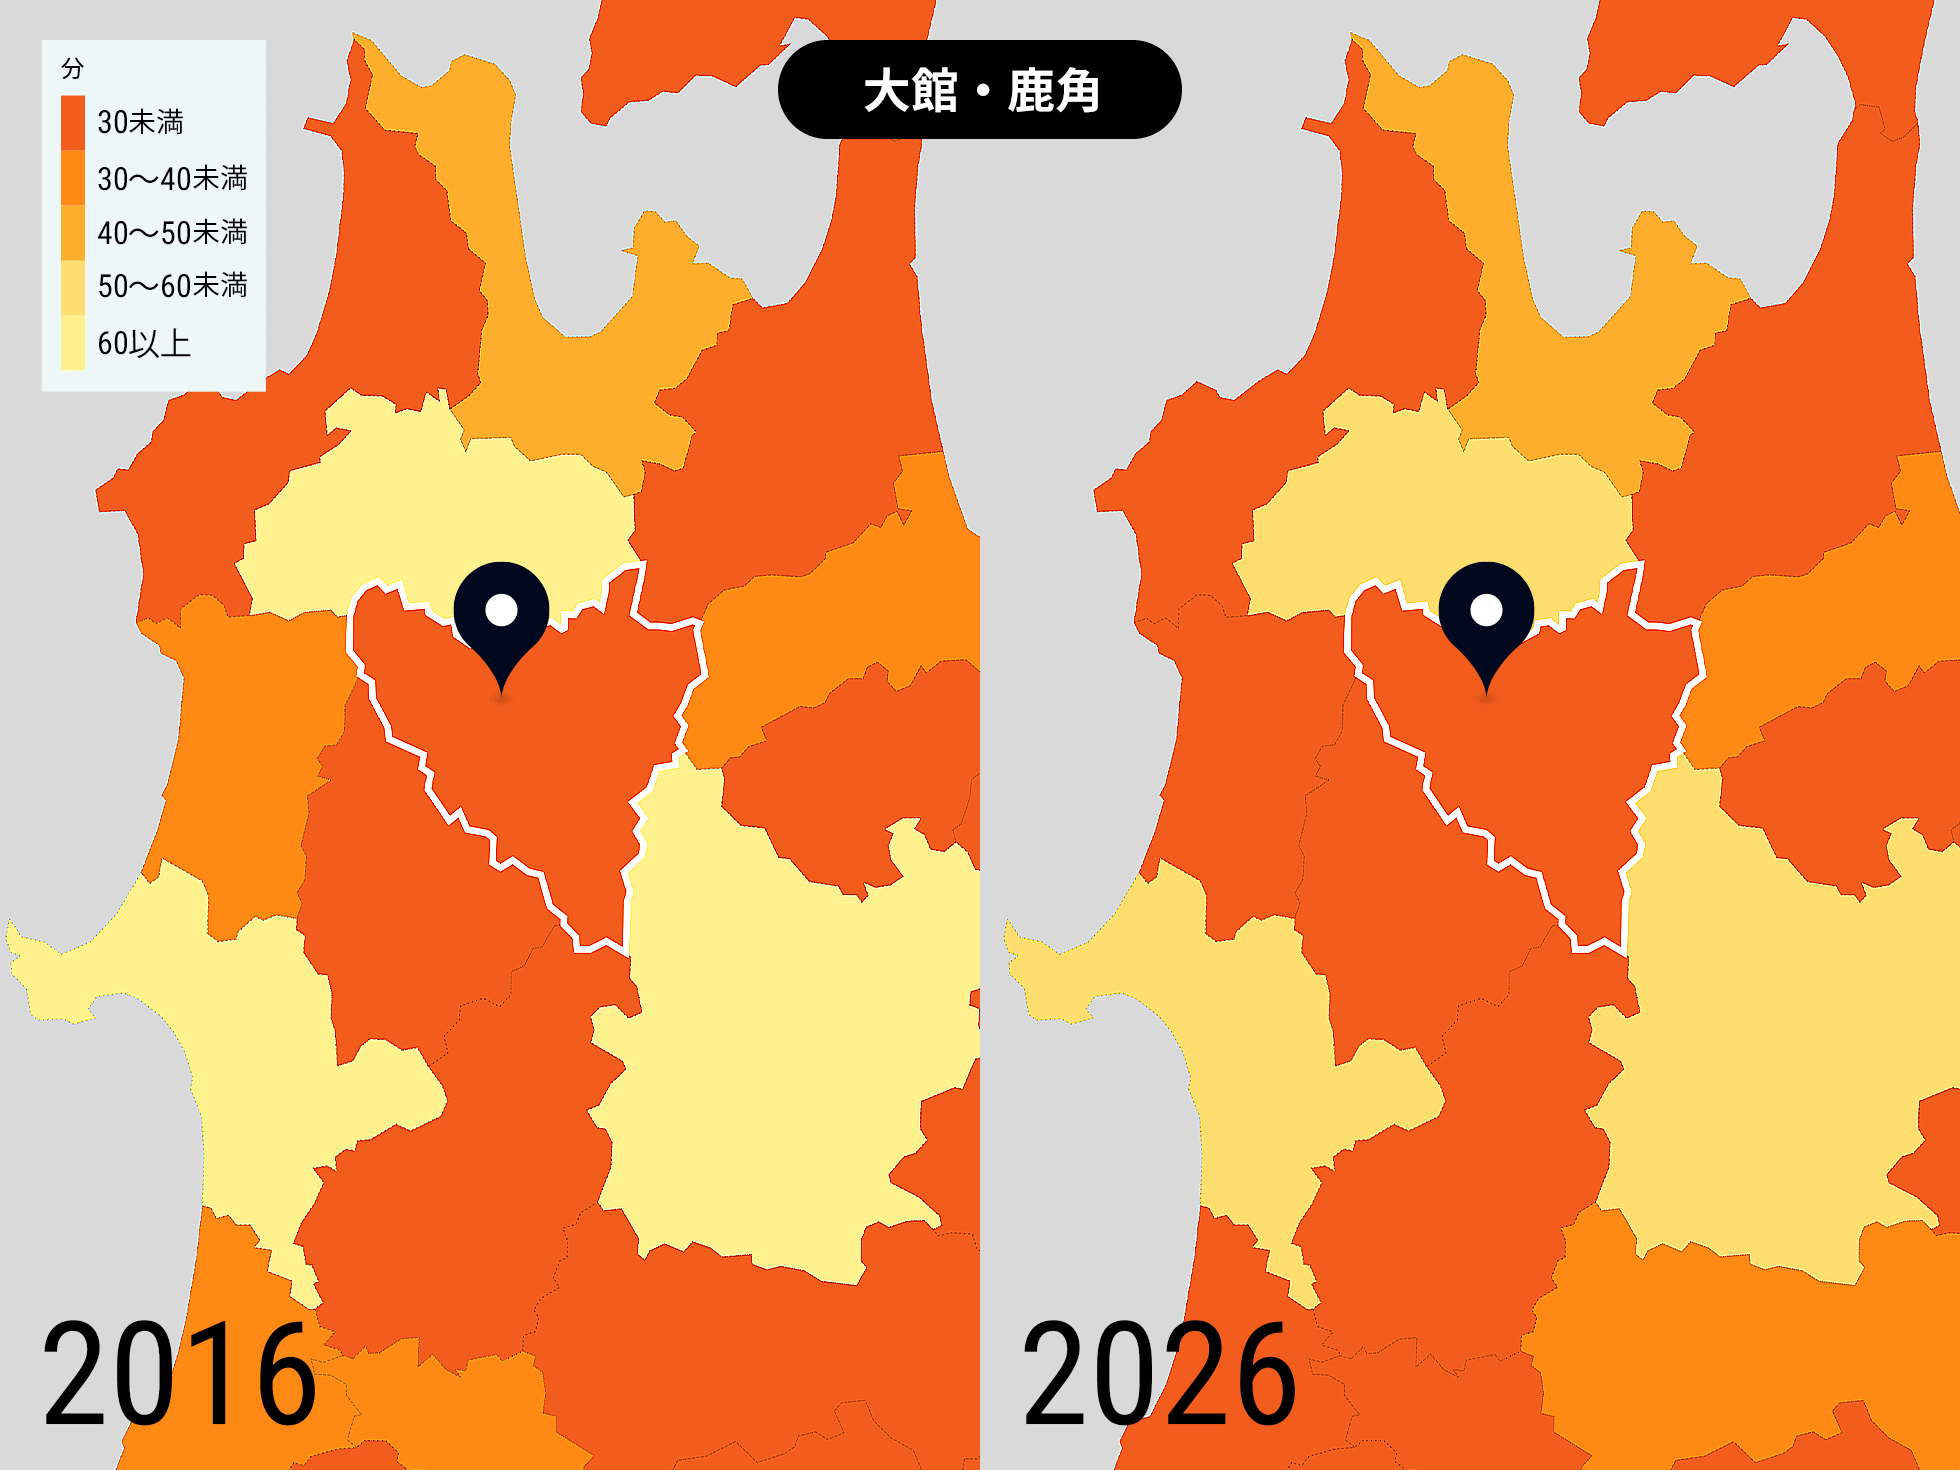 秋田県 大館・鹿角の2016年と2026年の比較